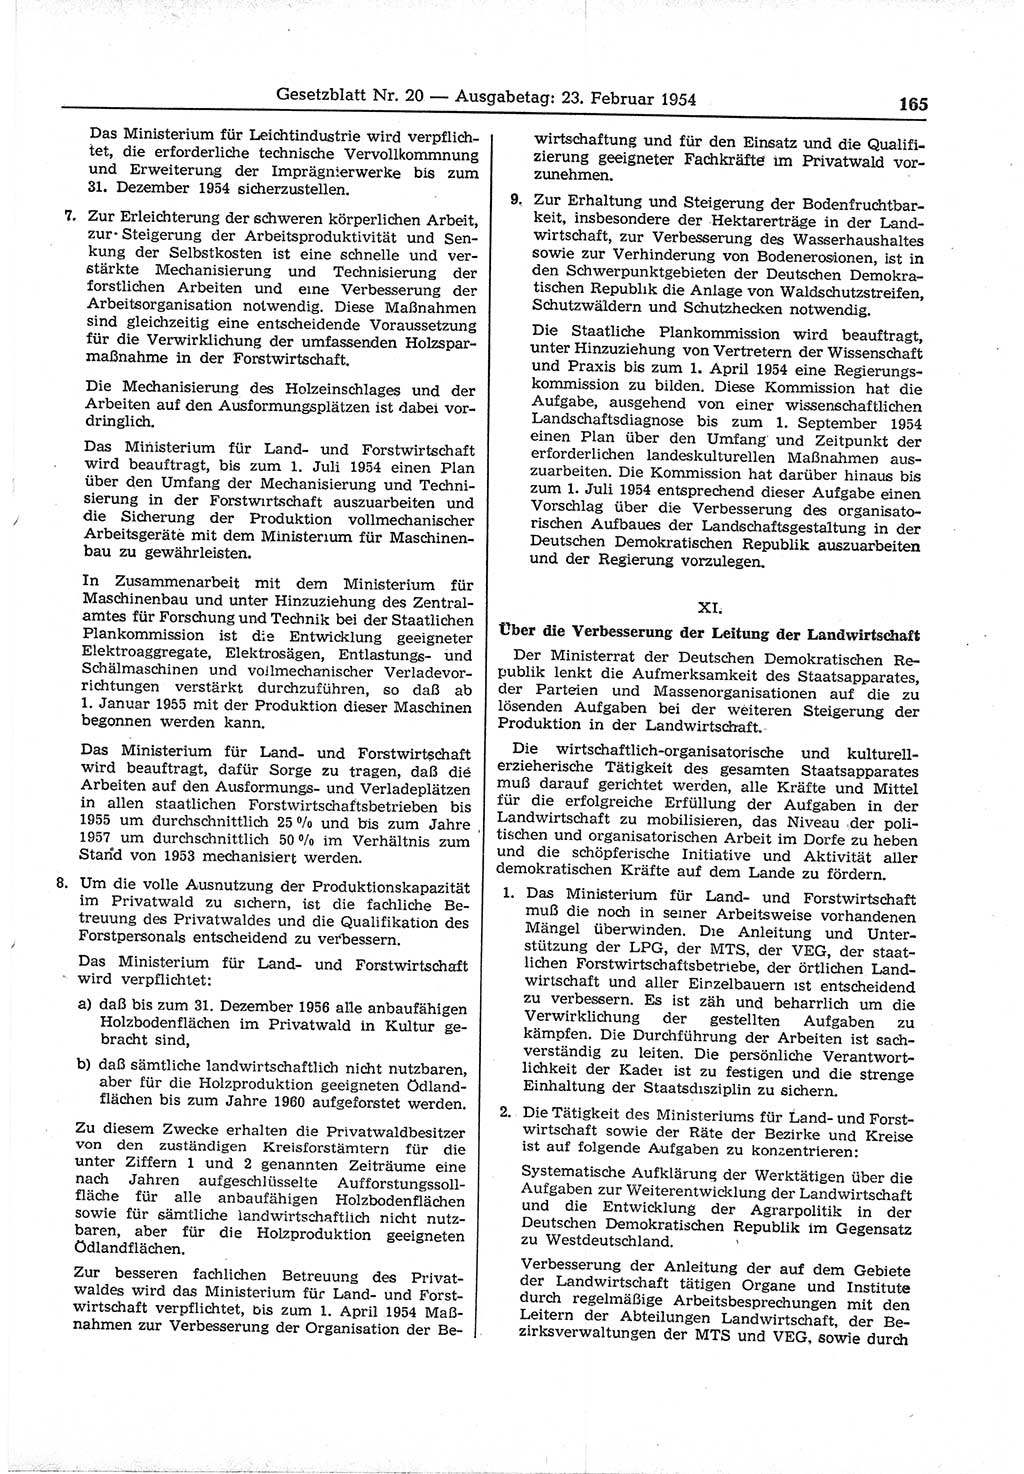 Gesetzblatt (GBl.) der Deutschen Demokratischen Republik (DDR) 1954, Seite 165 (GBl. DDR 1954, S. 165)